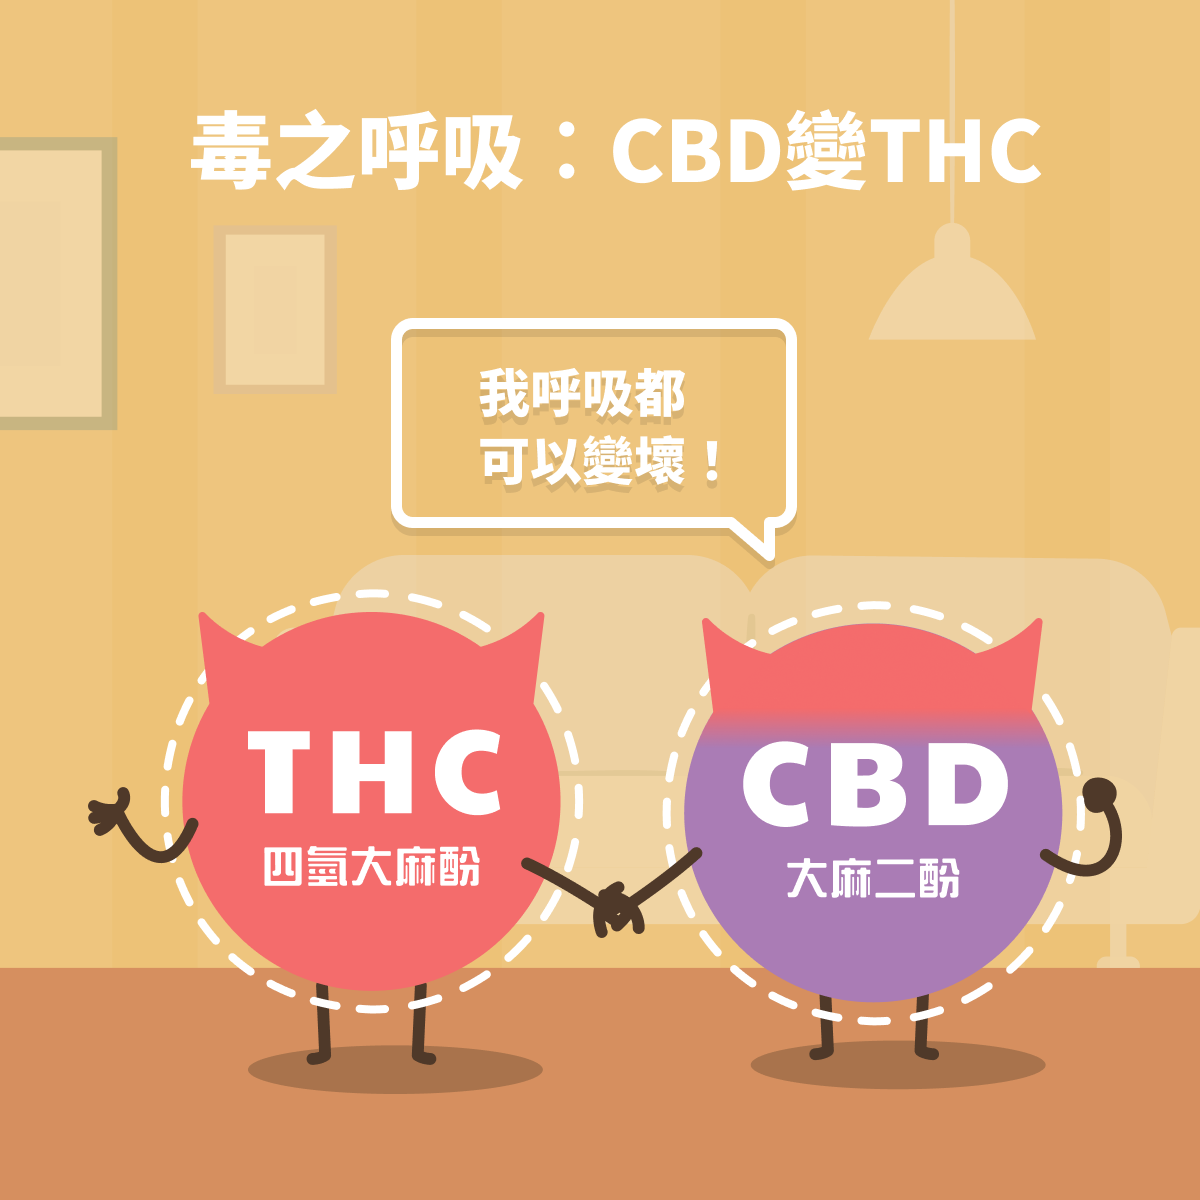 毒之呼吸︰CBD變THC